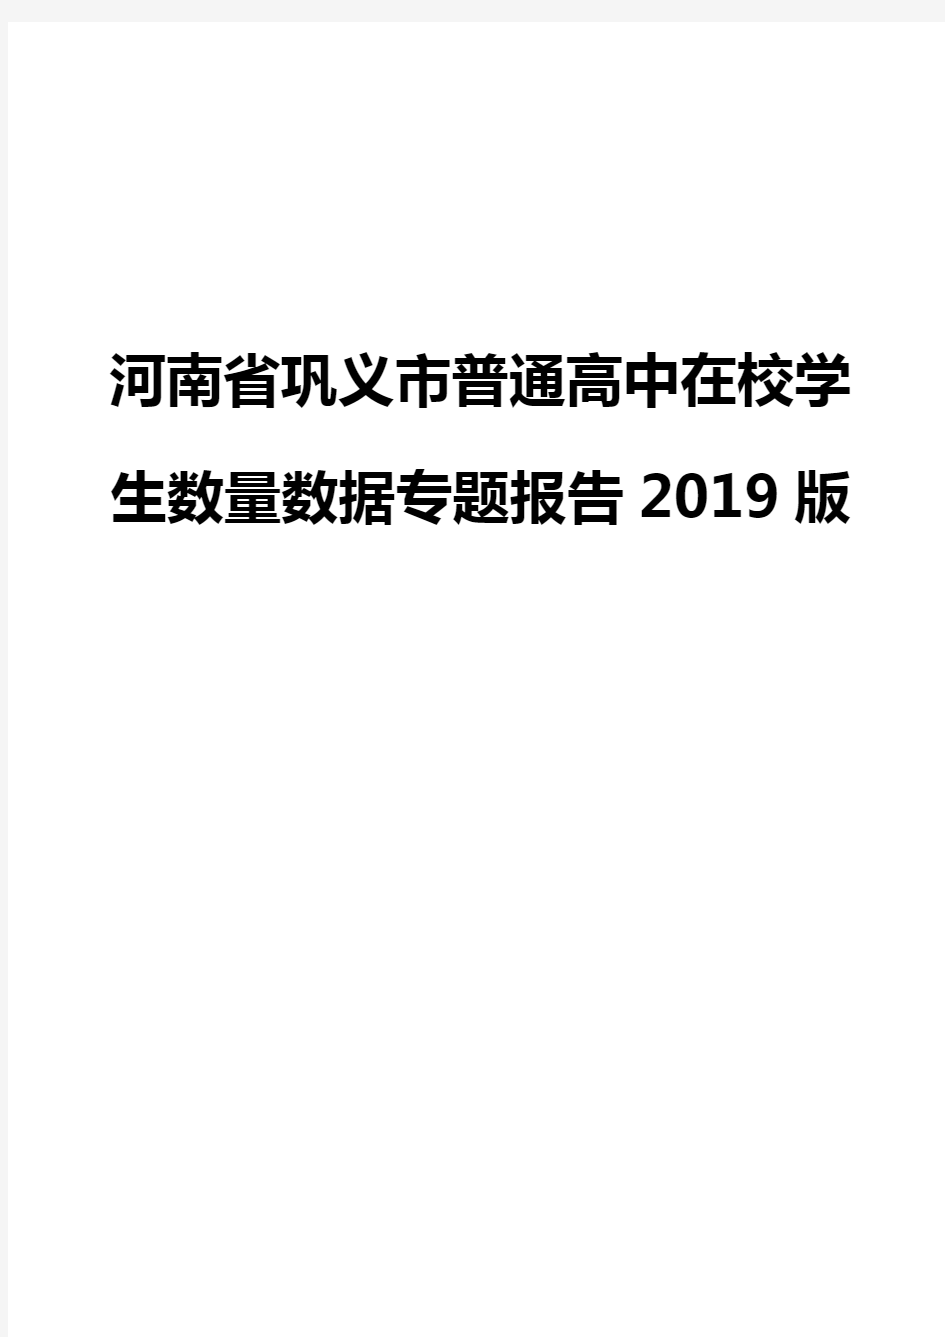 河南省巩义市普通高中在校学生数量数据专题报告2019版